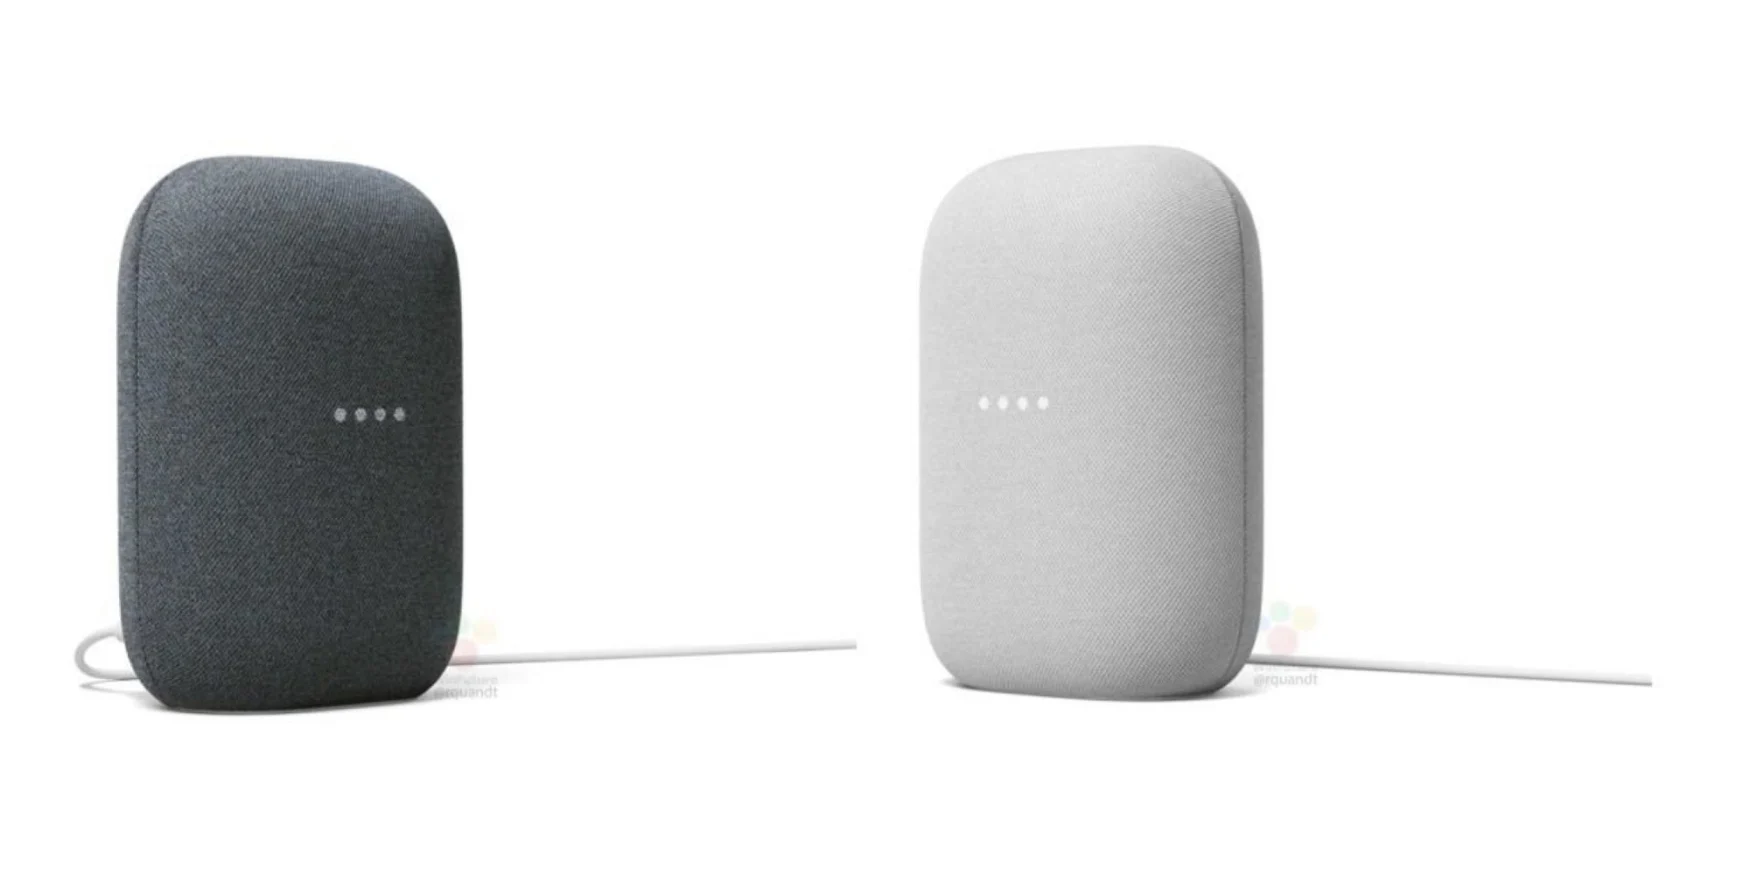 Google Nest smart speaker